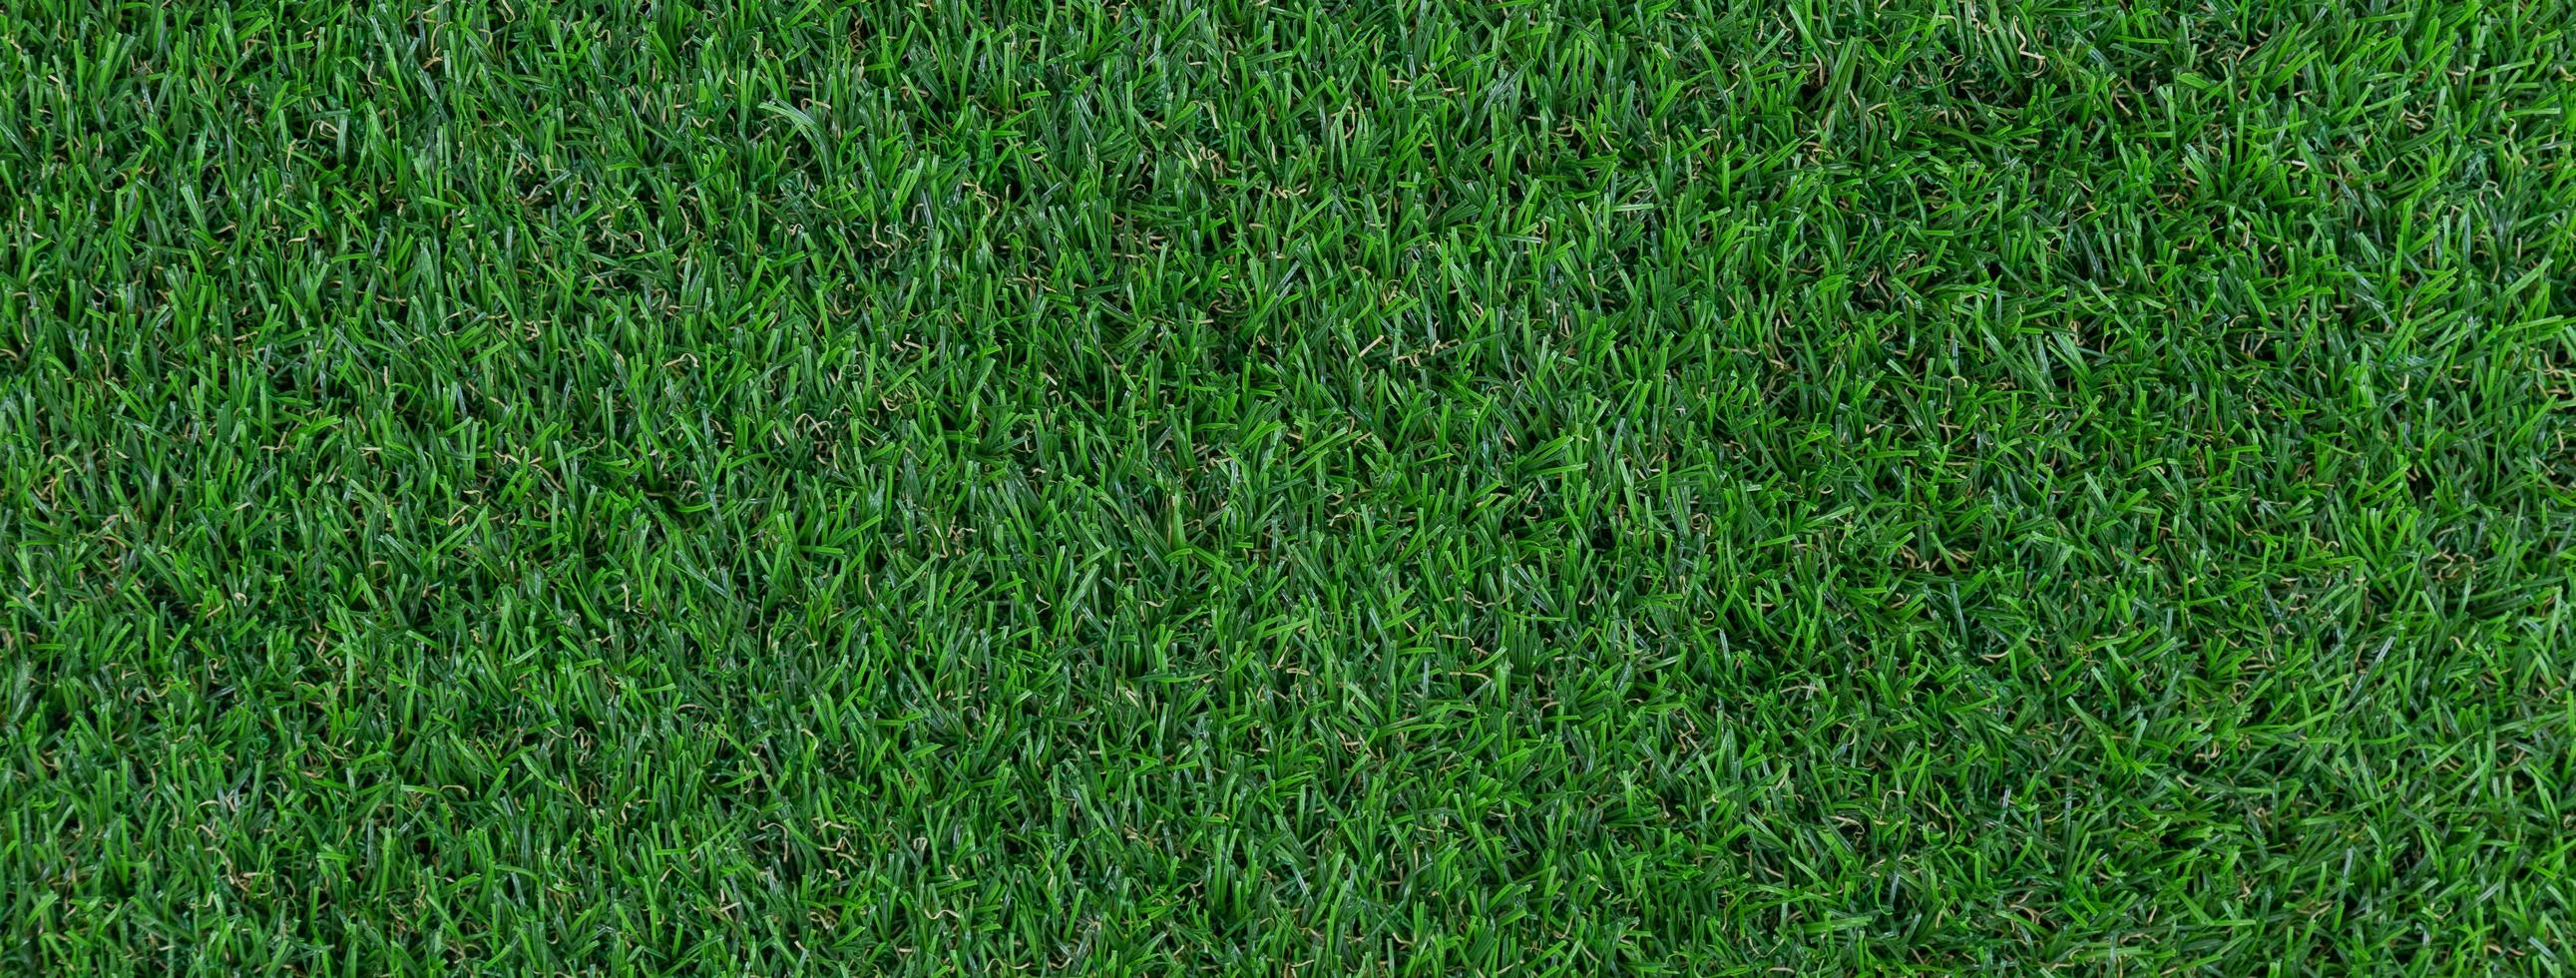 Artificial grass texture banner photo